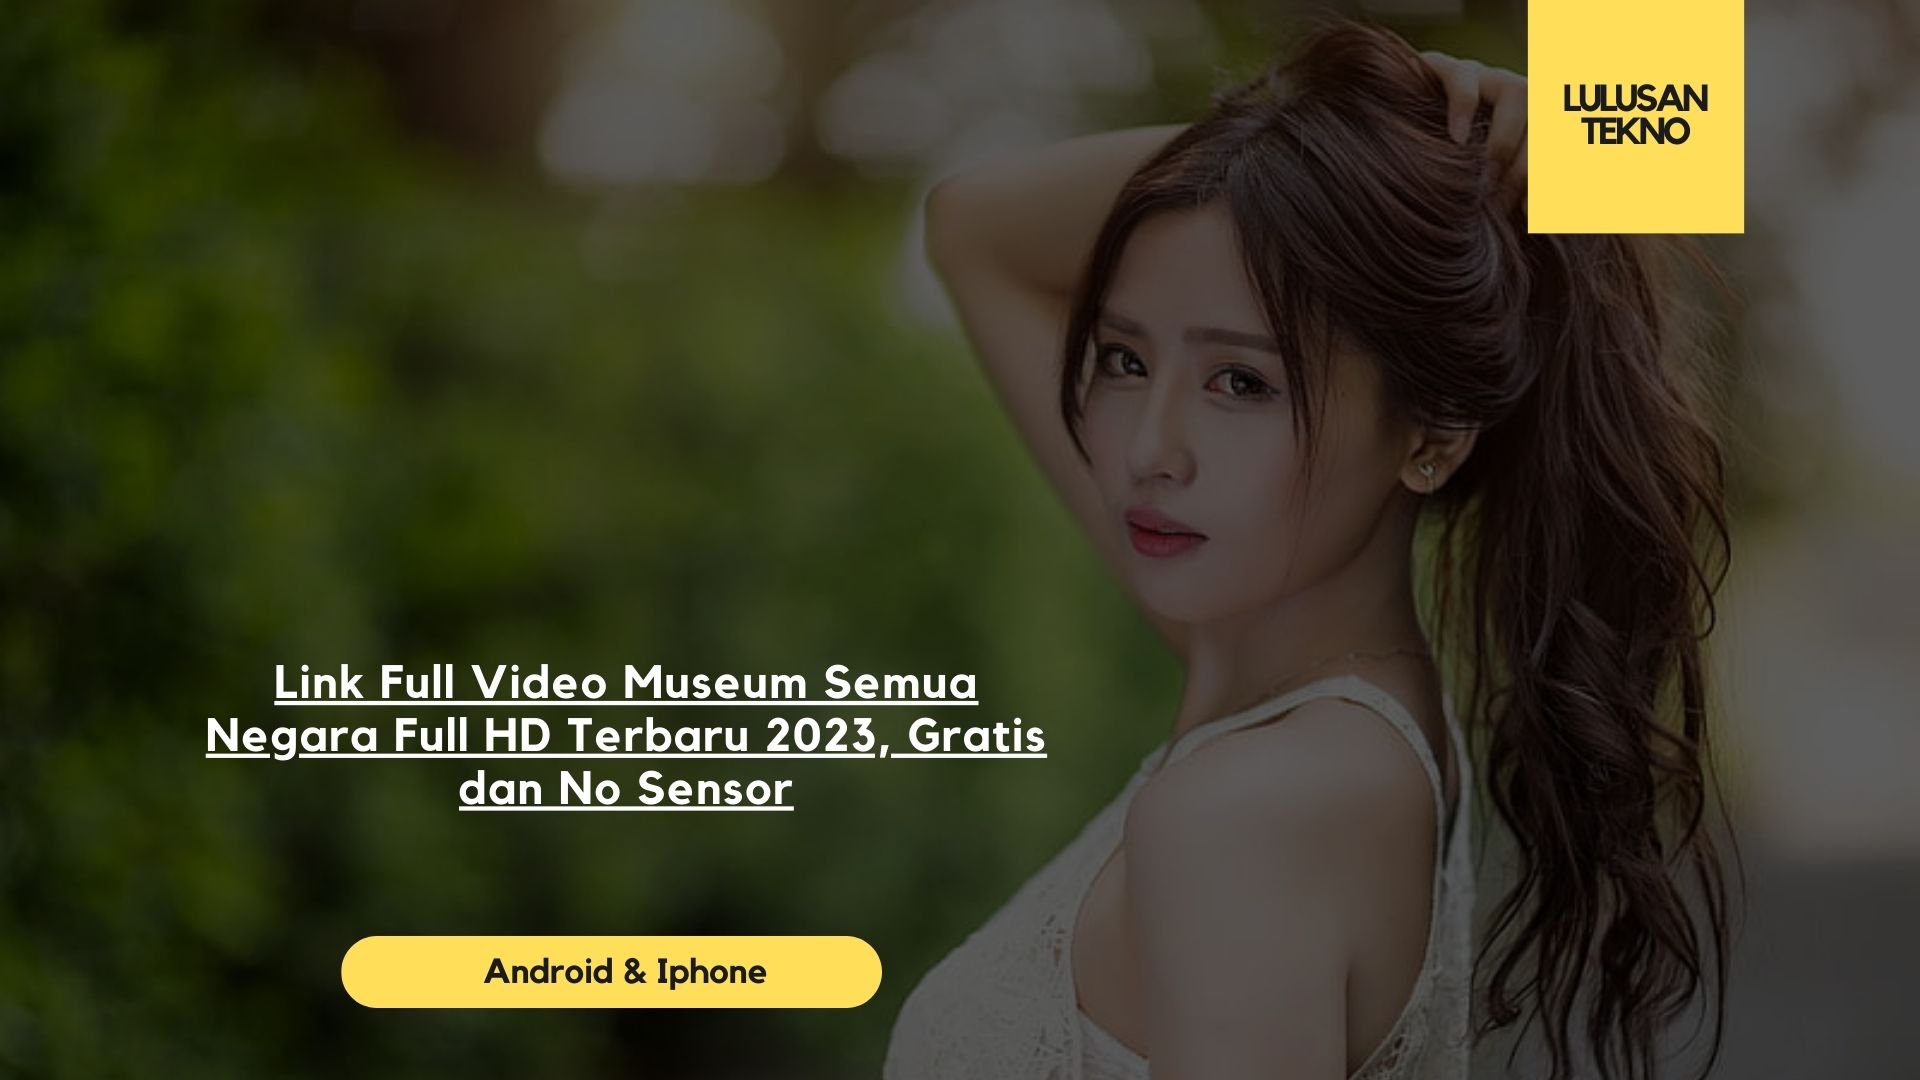 Link Full Video Museum Semua Negara Full HD Terbaru 2023, Gratis dan No Sensor